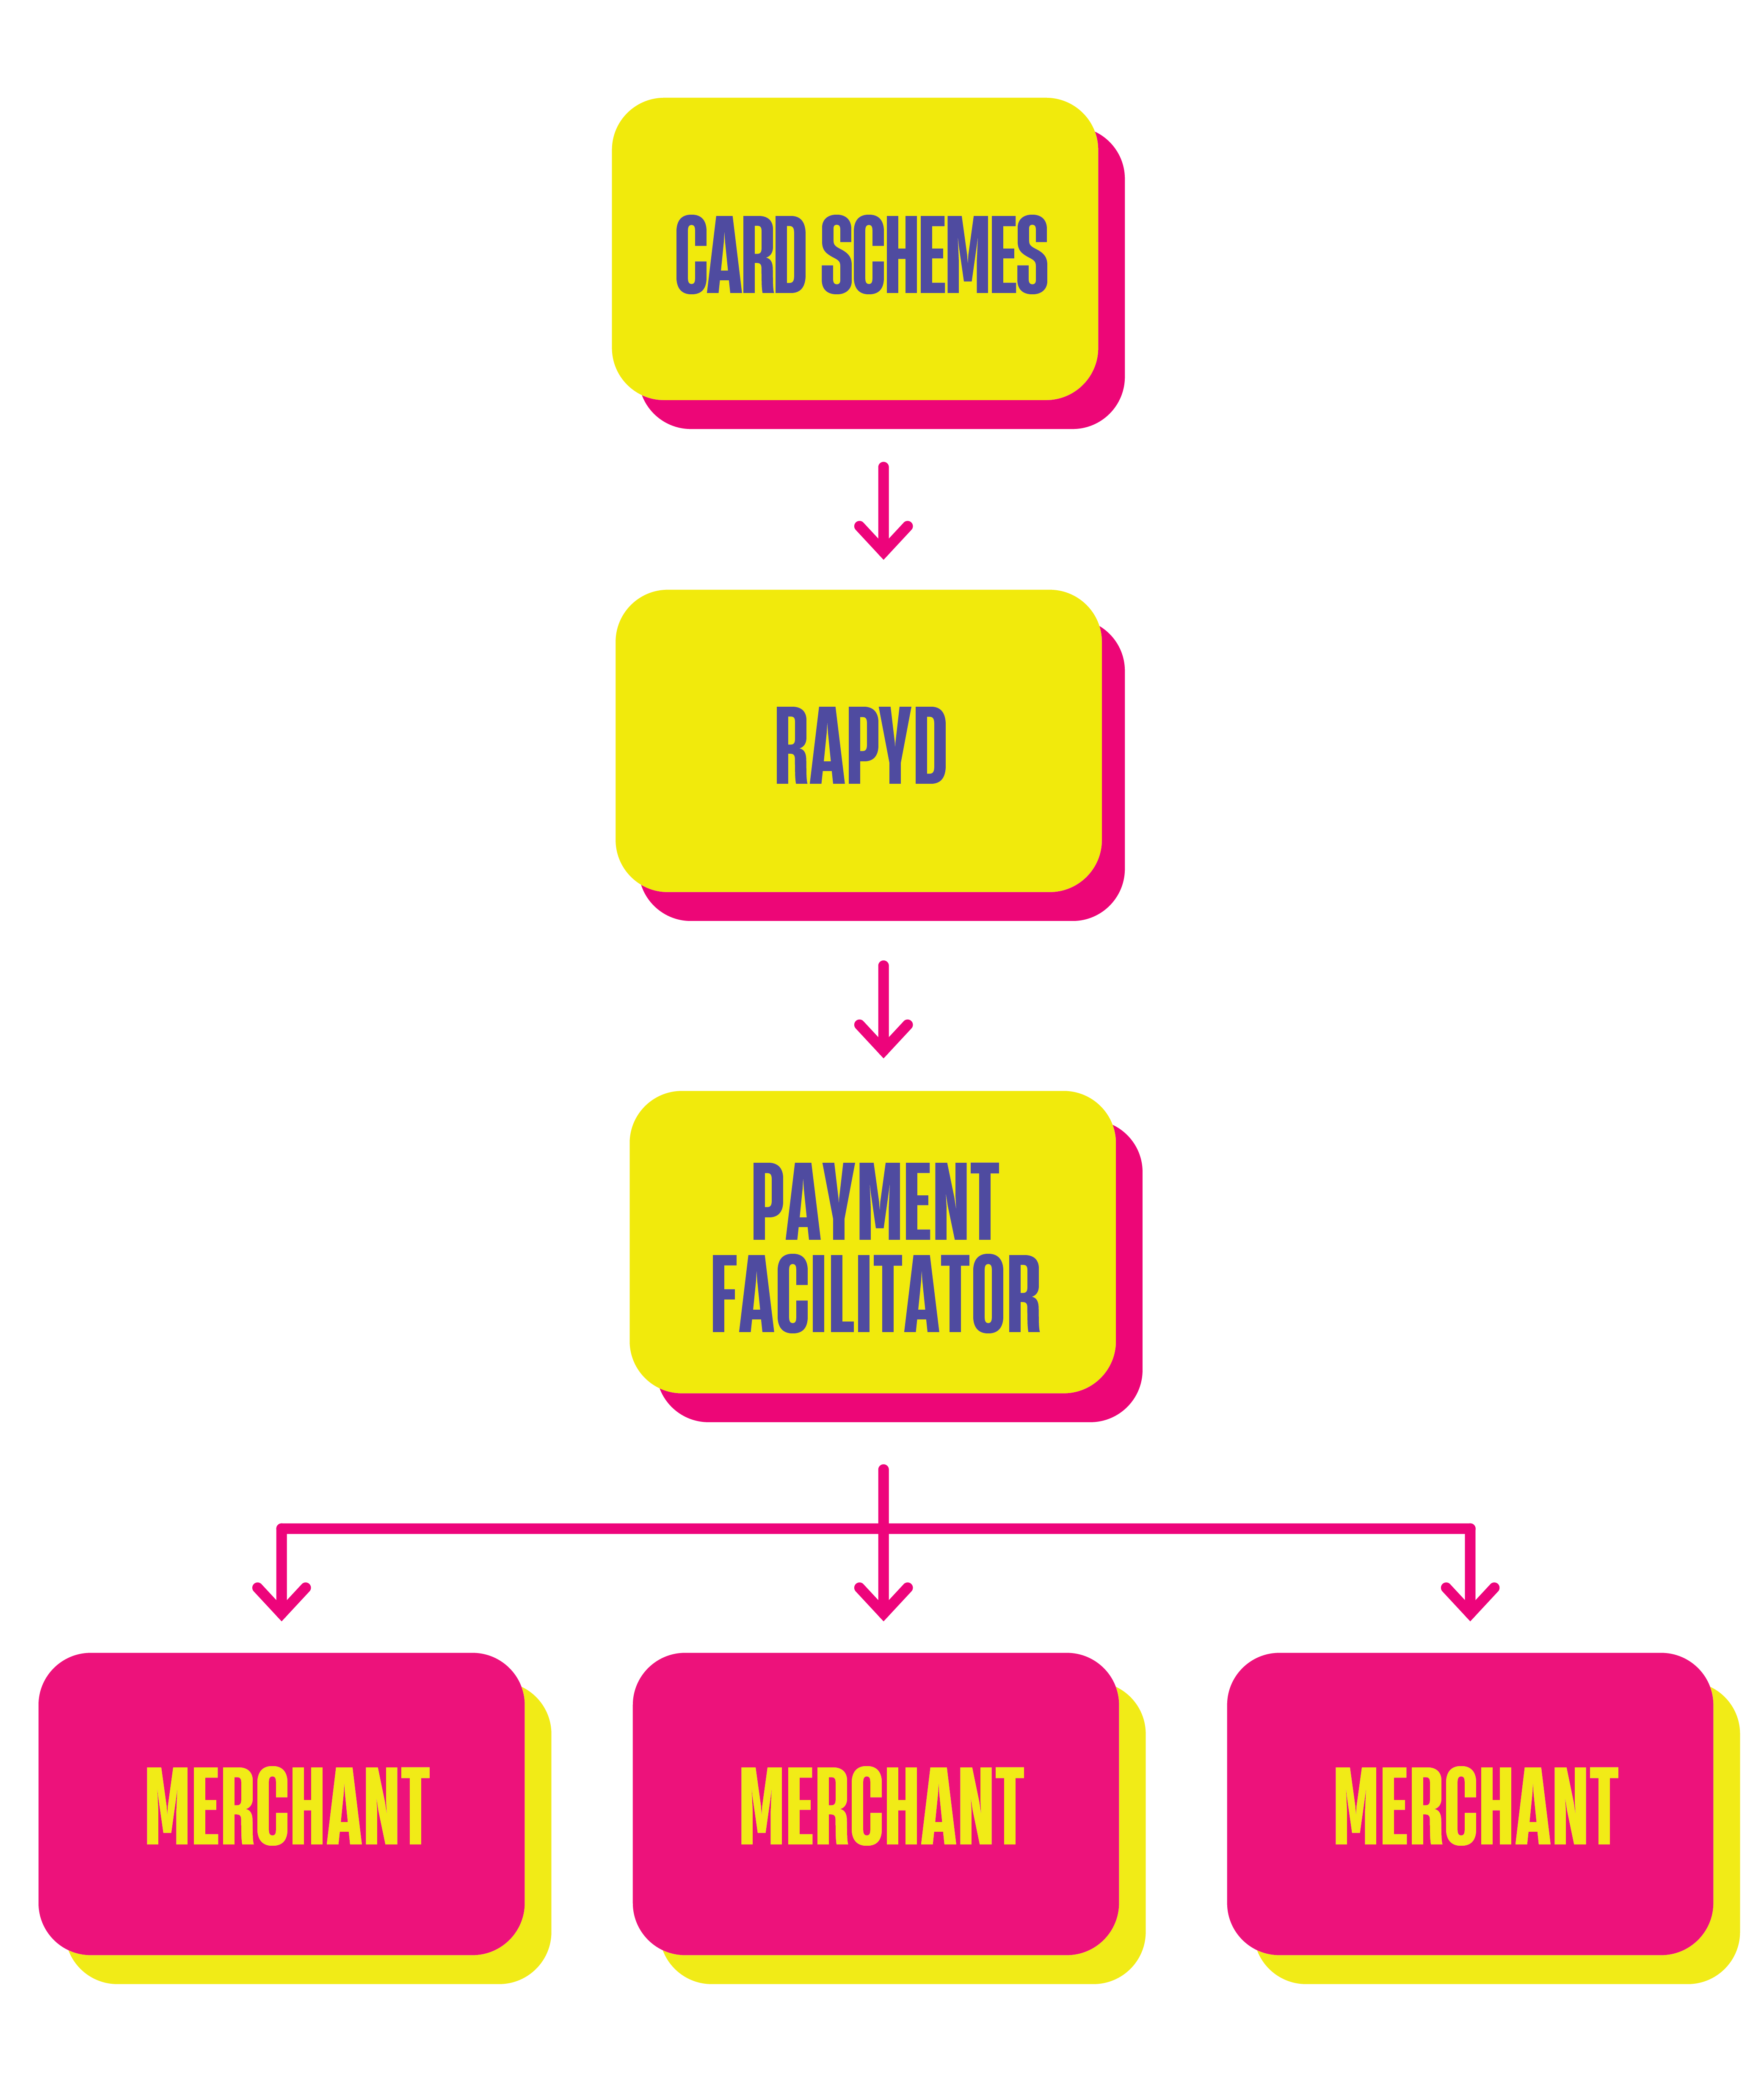 Payment facilitator flow diagram